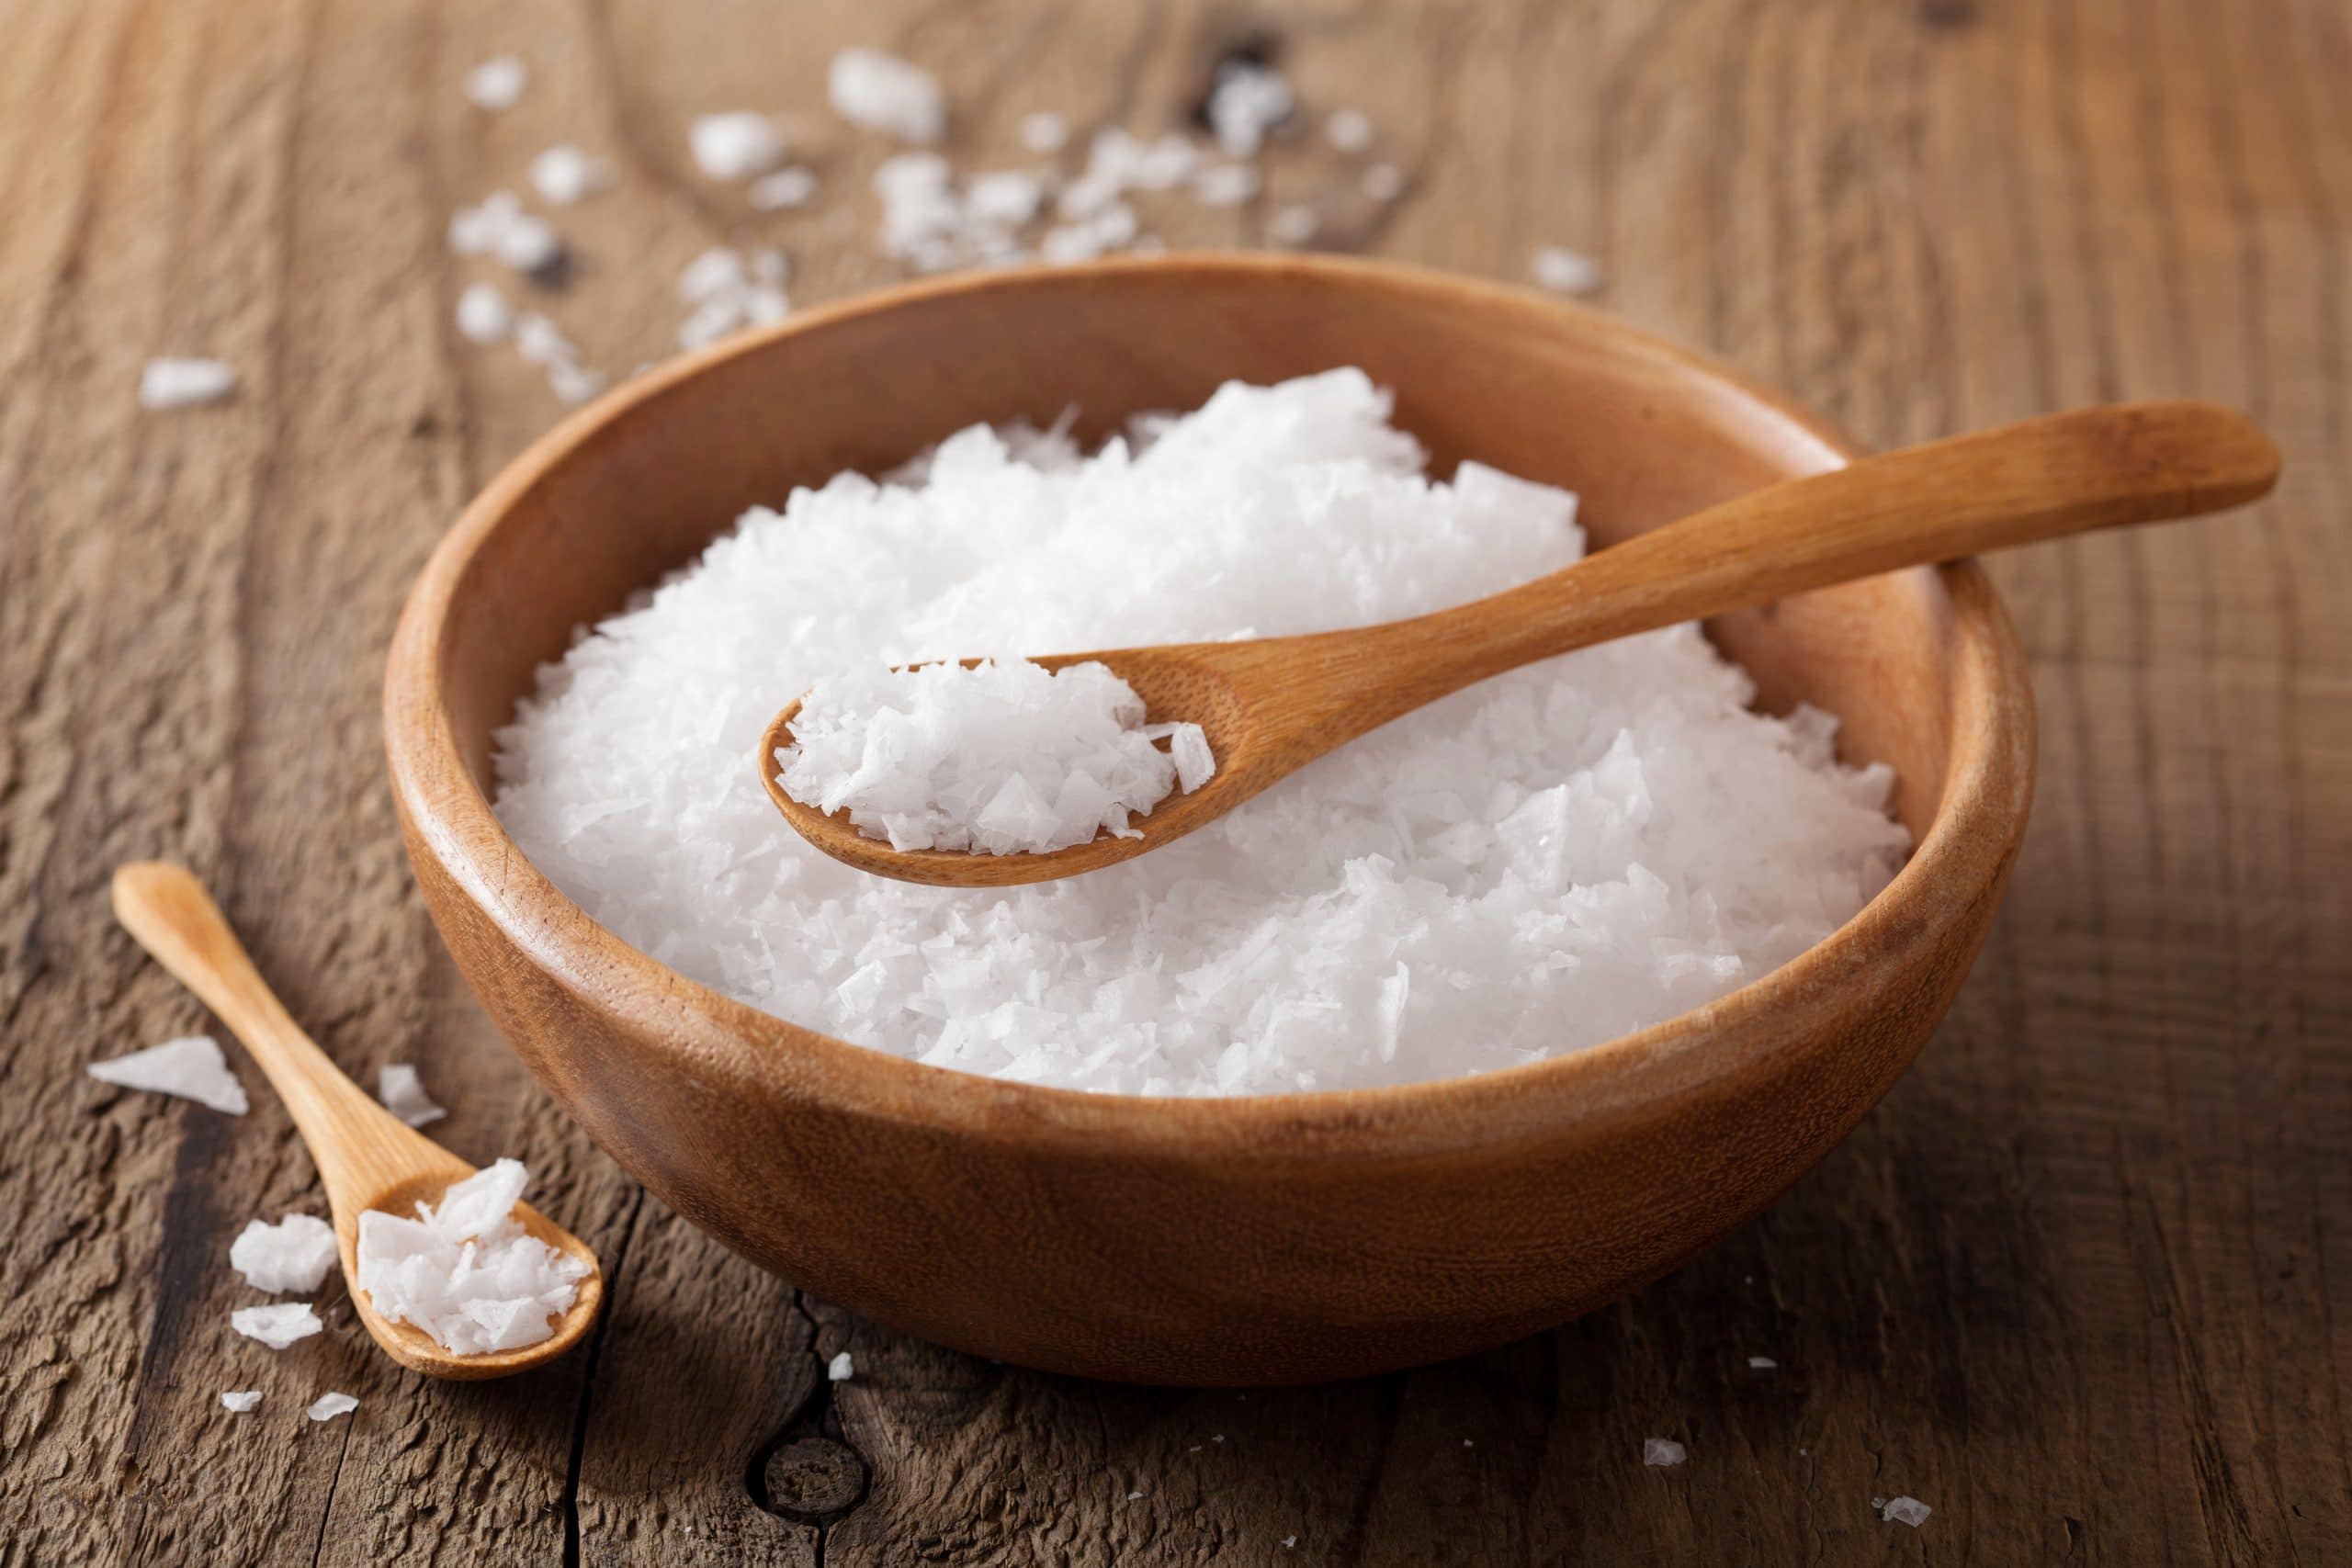 Sal grosso purifica o ambiente e ajuda a eliminar energias negativas -  Revista Marie Claire